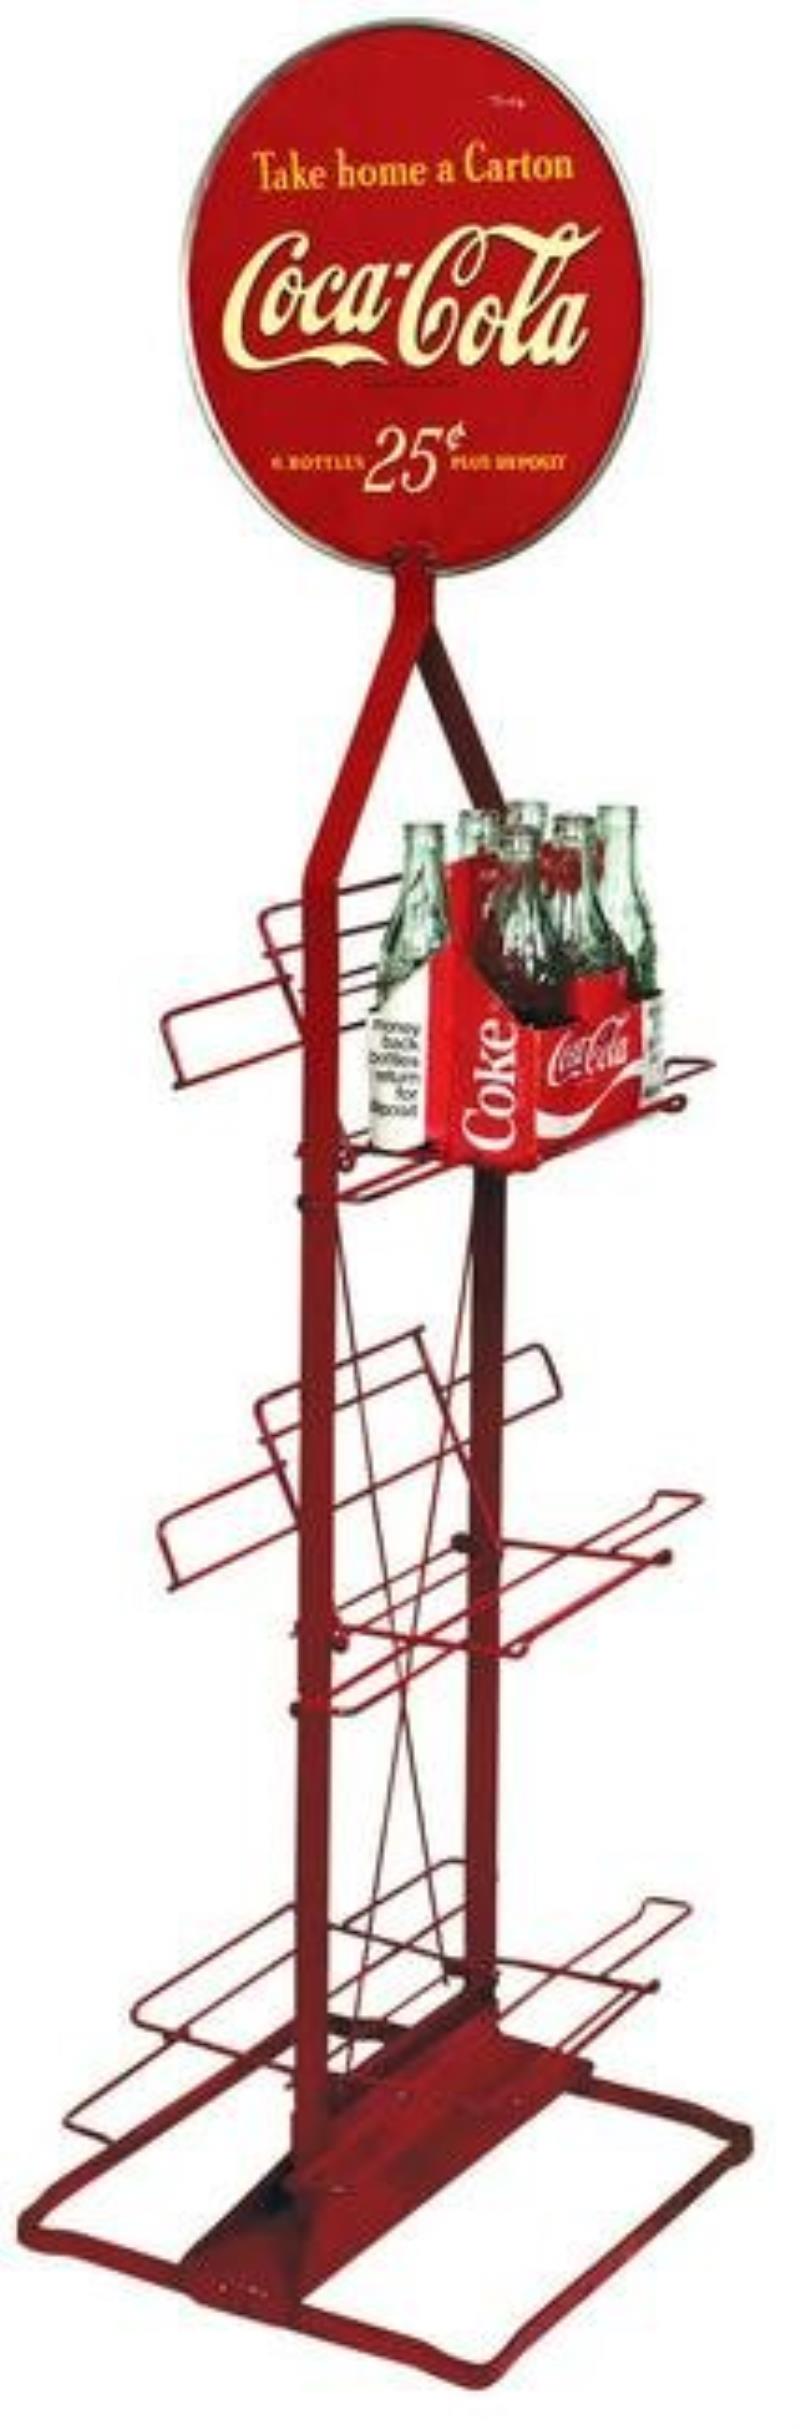 Coca-Cola Bottle Rack, Take Home A Carton, 25 Cents